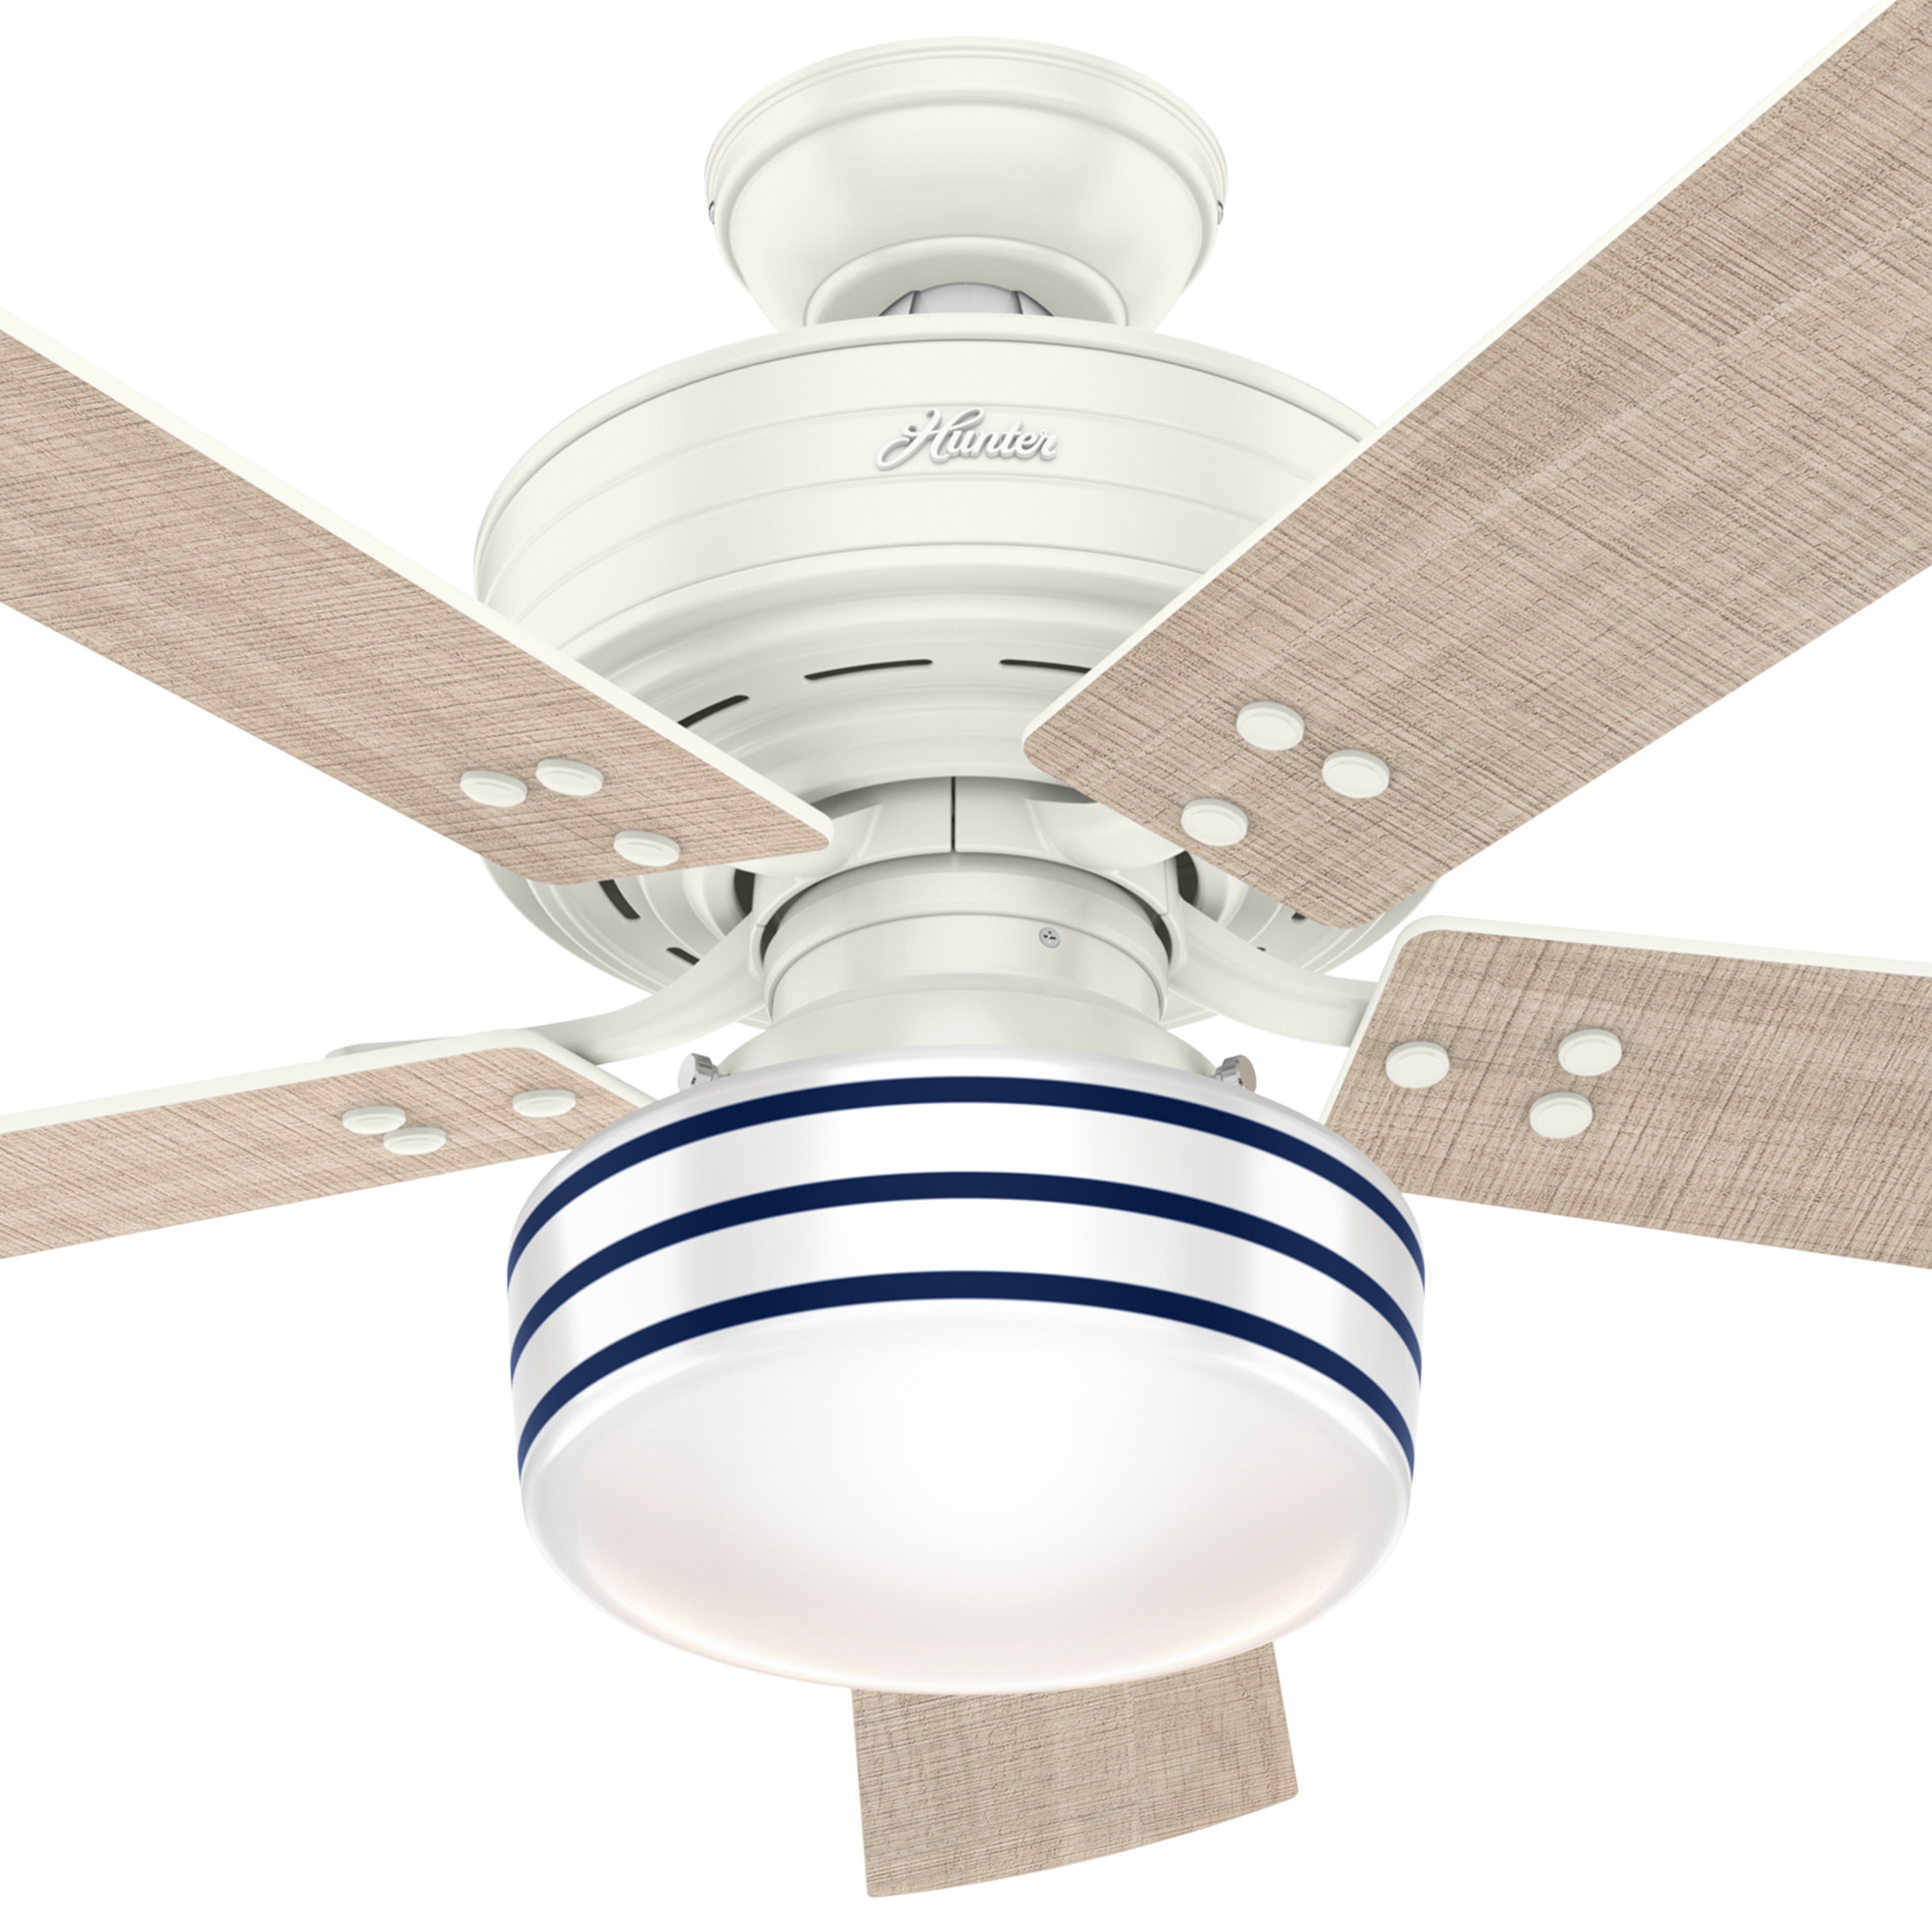 Hunter Cedar Key Outdoor with Light 52 inch Ceiling Fan ...